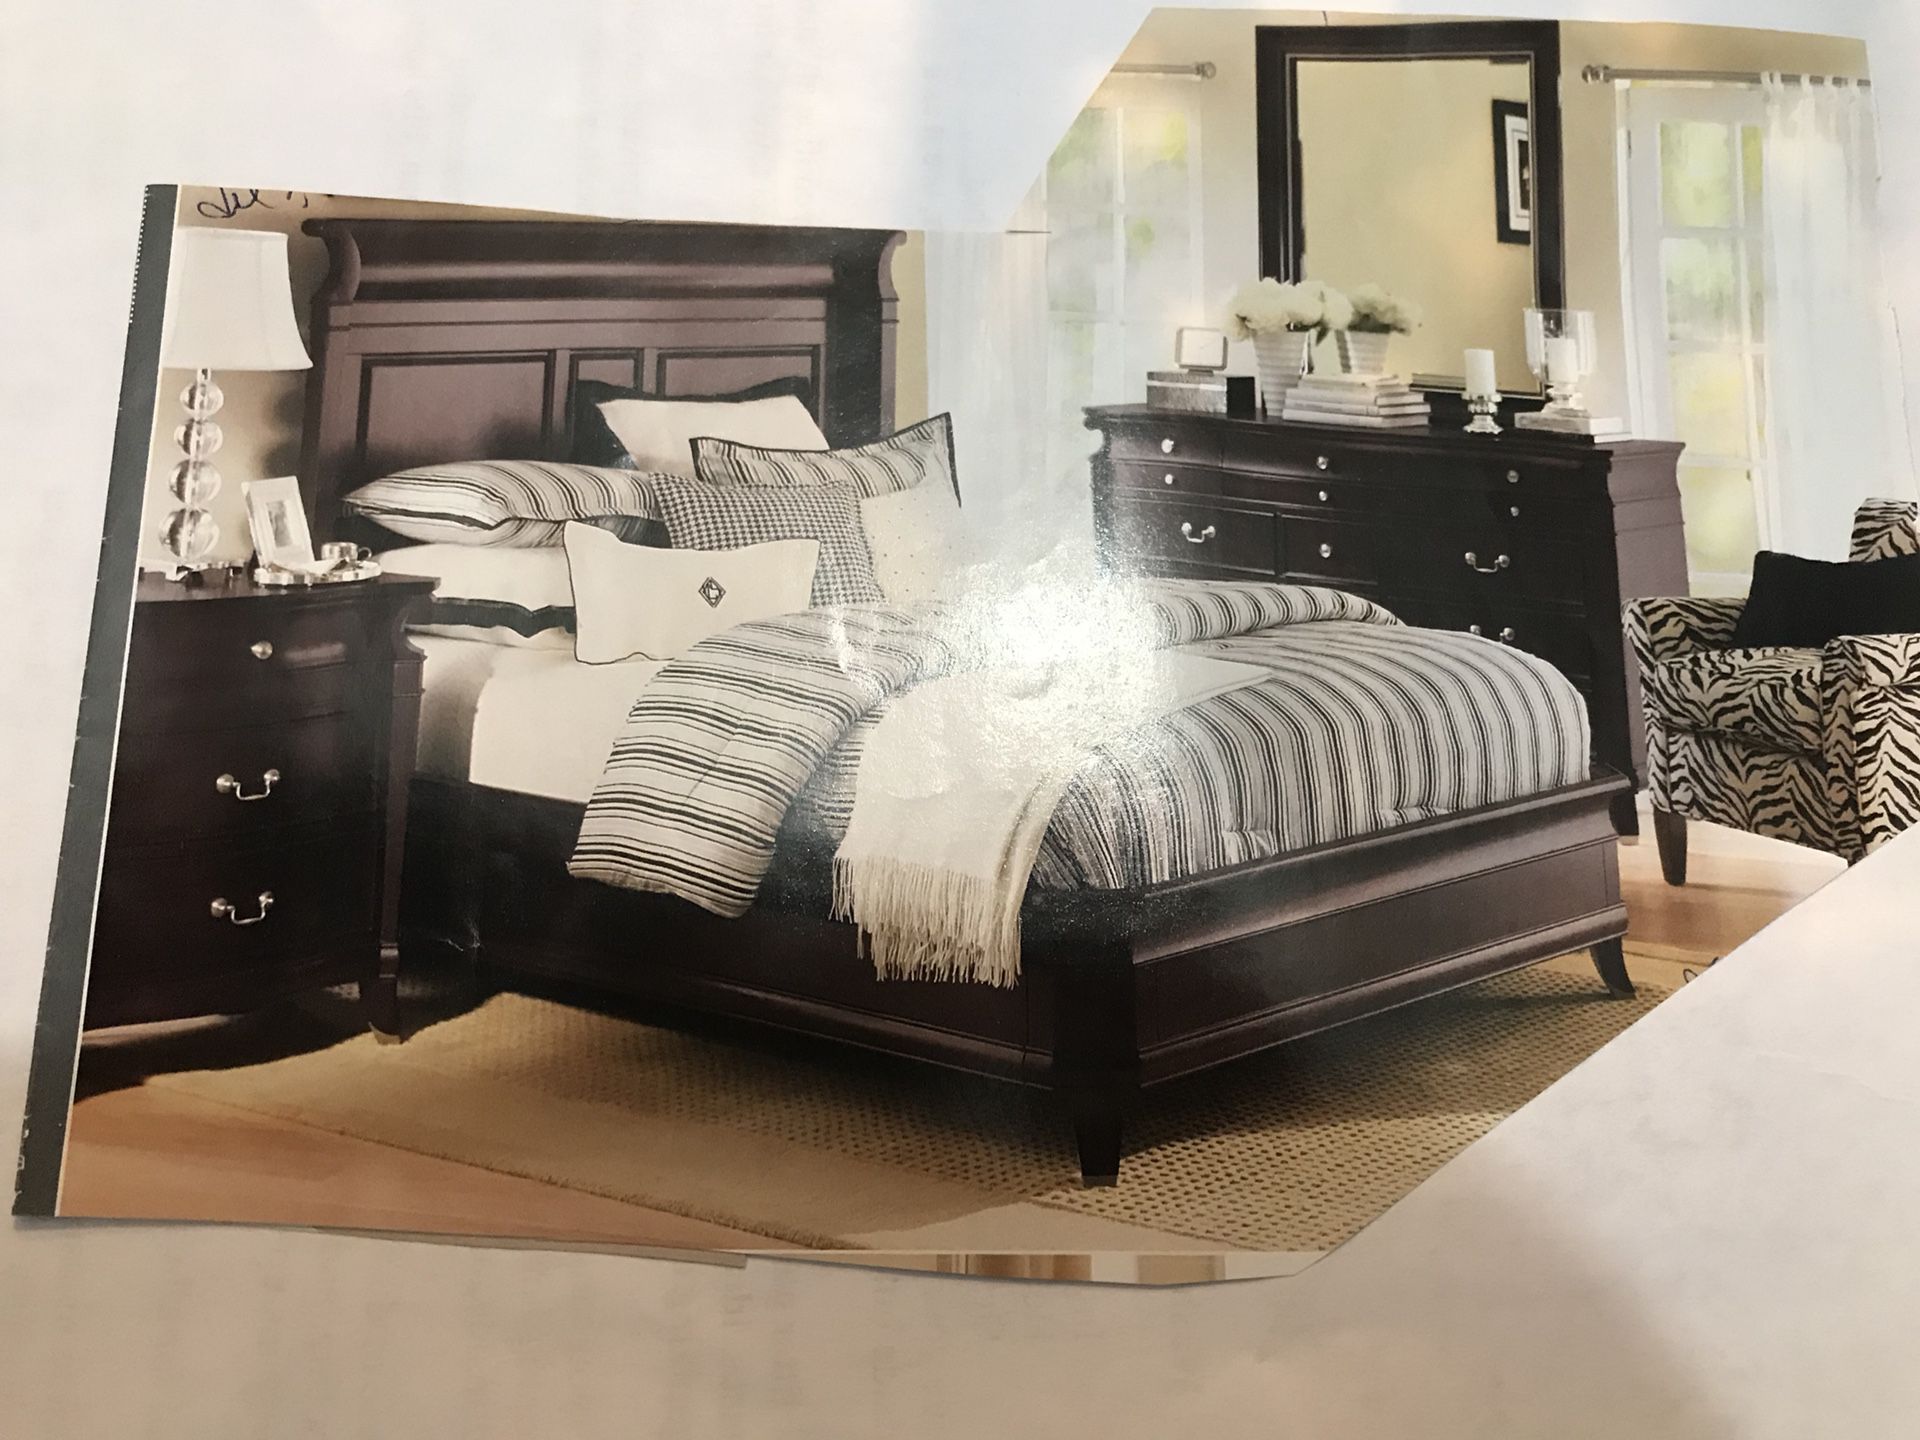 Montgomery 4 piece bedroom set best offer